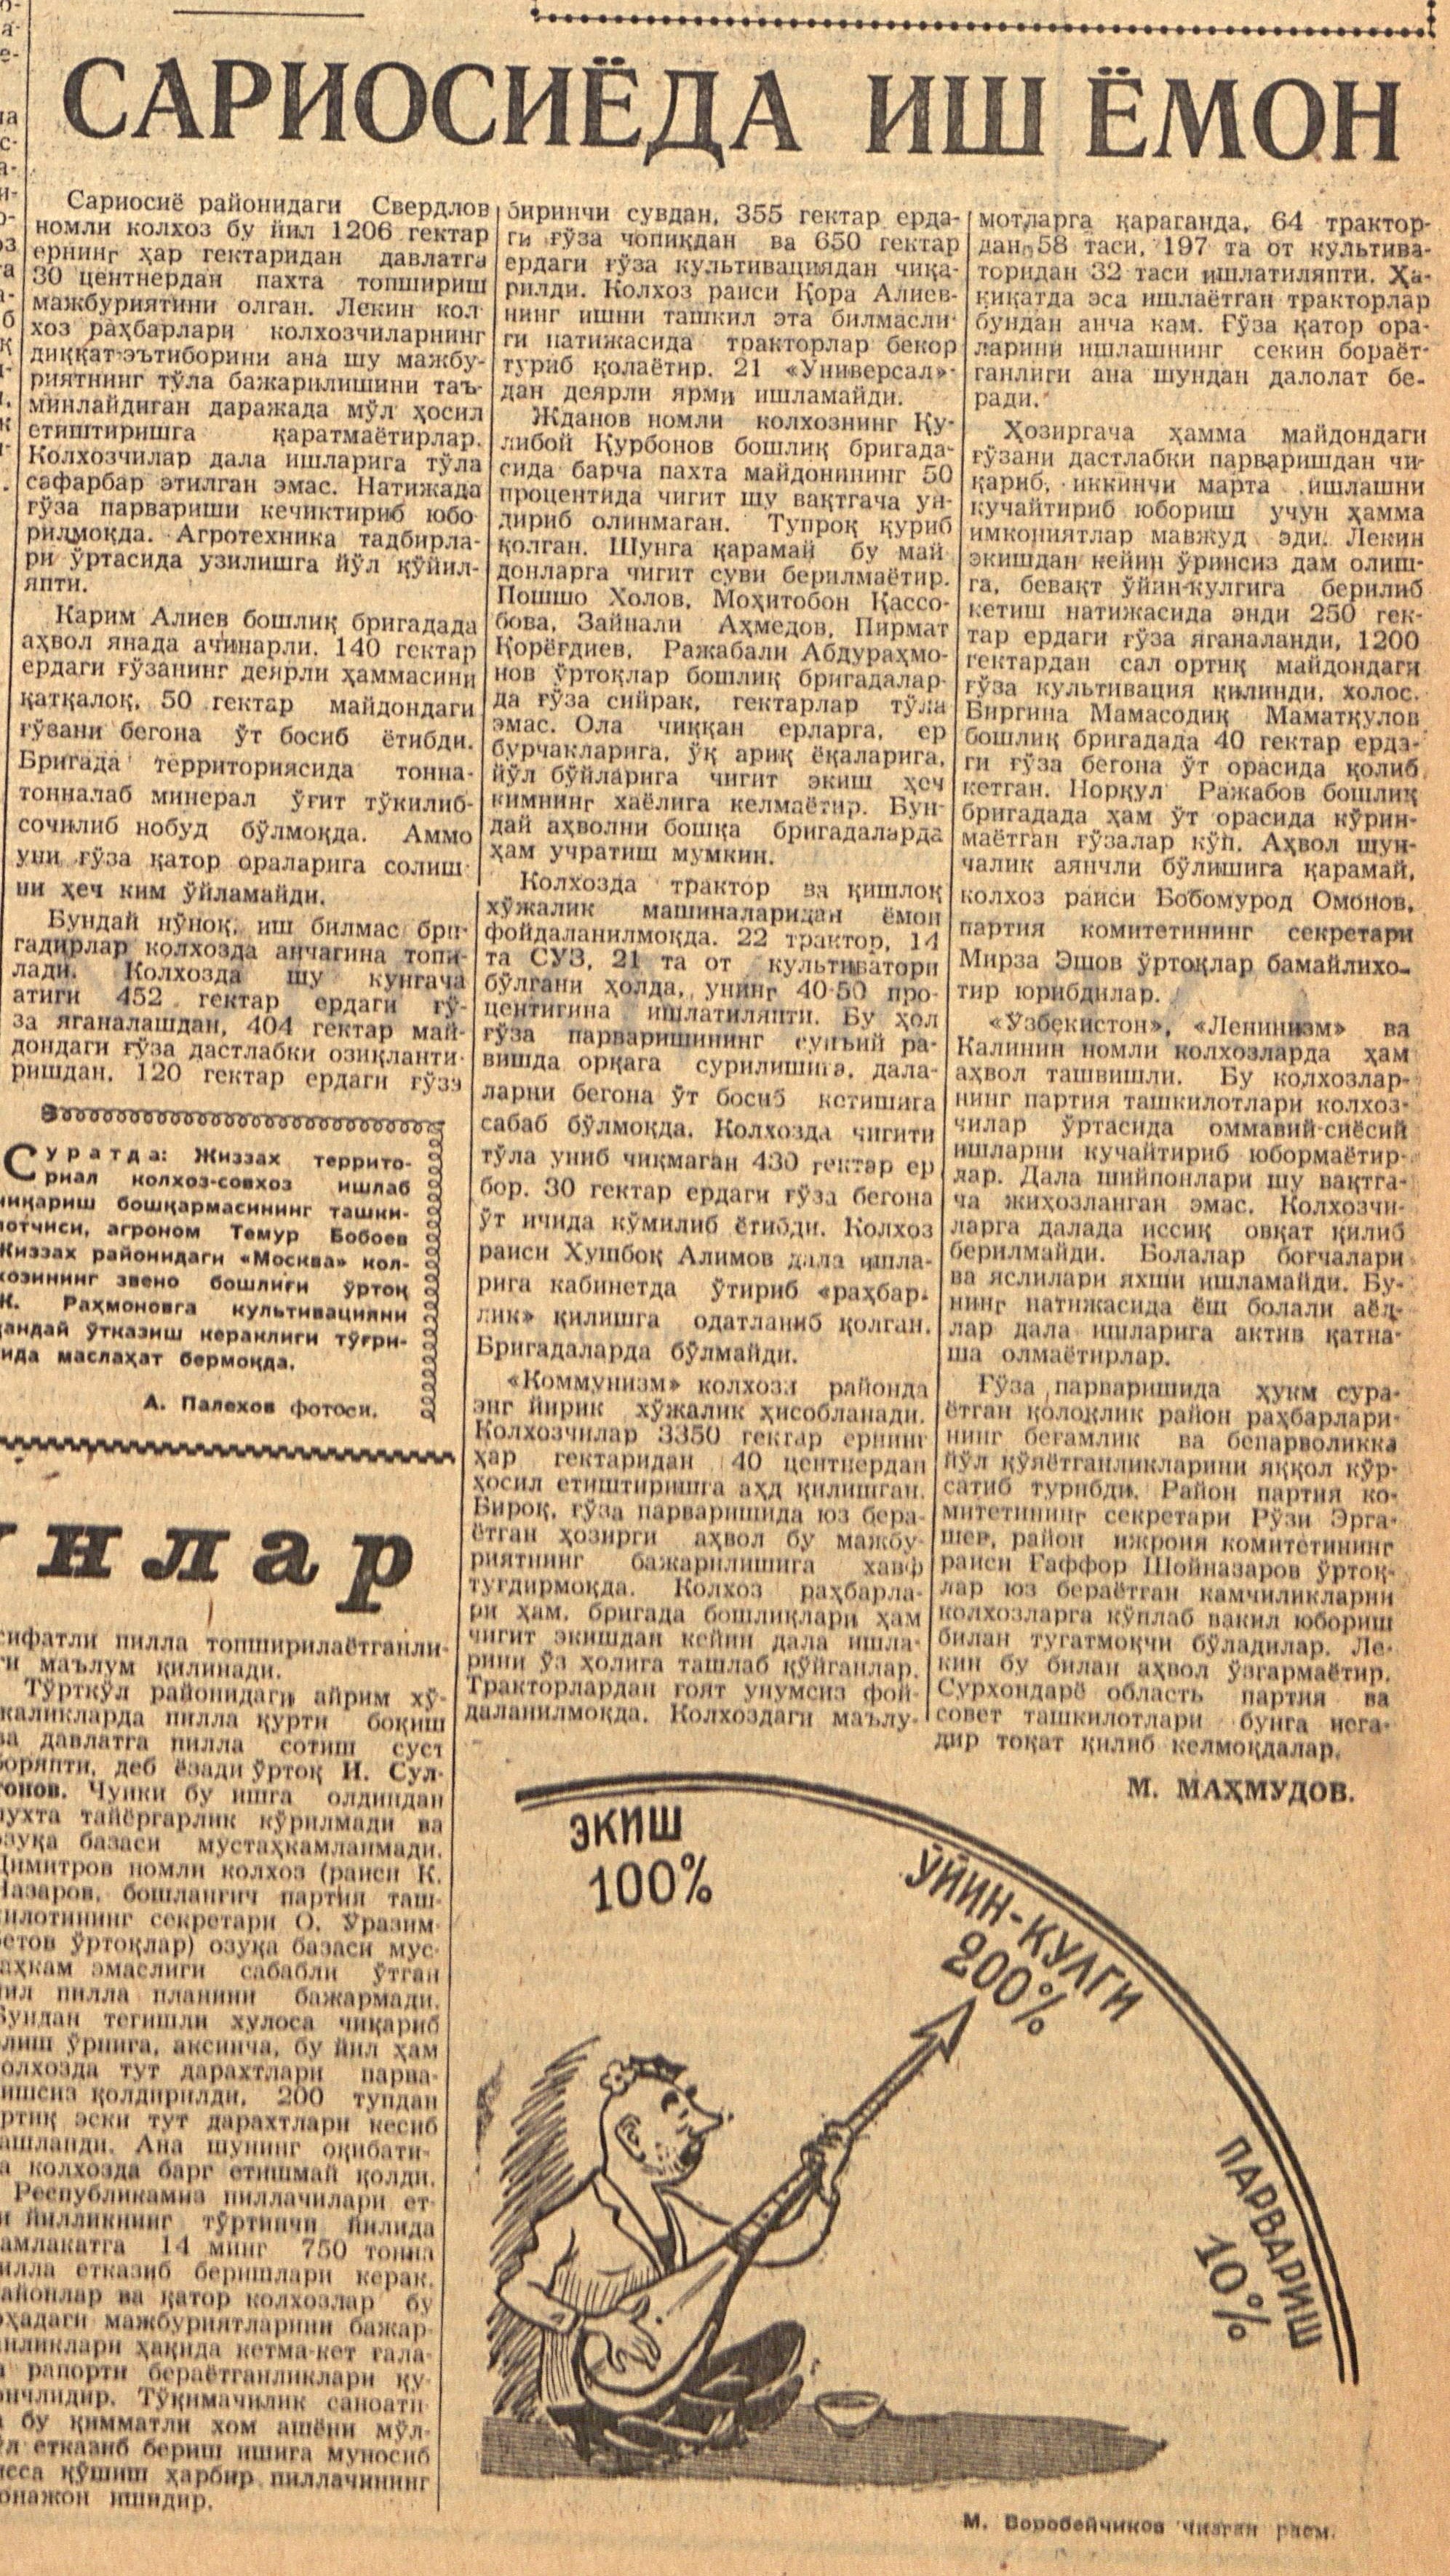 “Qizil O‘zbekiston” gazetasining 1962-yil 24-may sonidan lavha